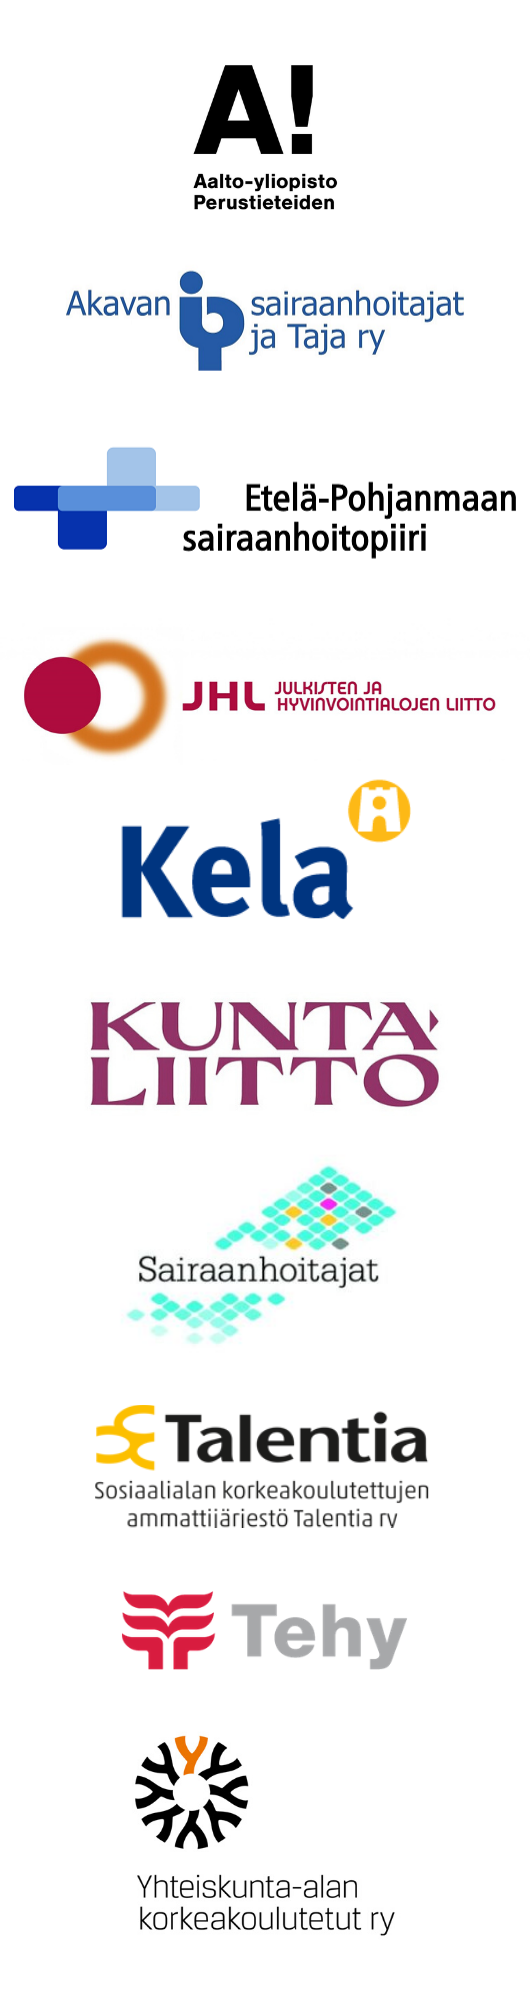 Yhteistyökumppaneiden logot. Kumppanit listattuna tekstimuodossa keskipalstassa.